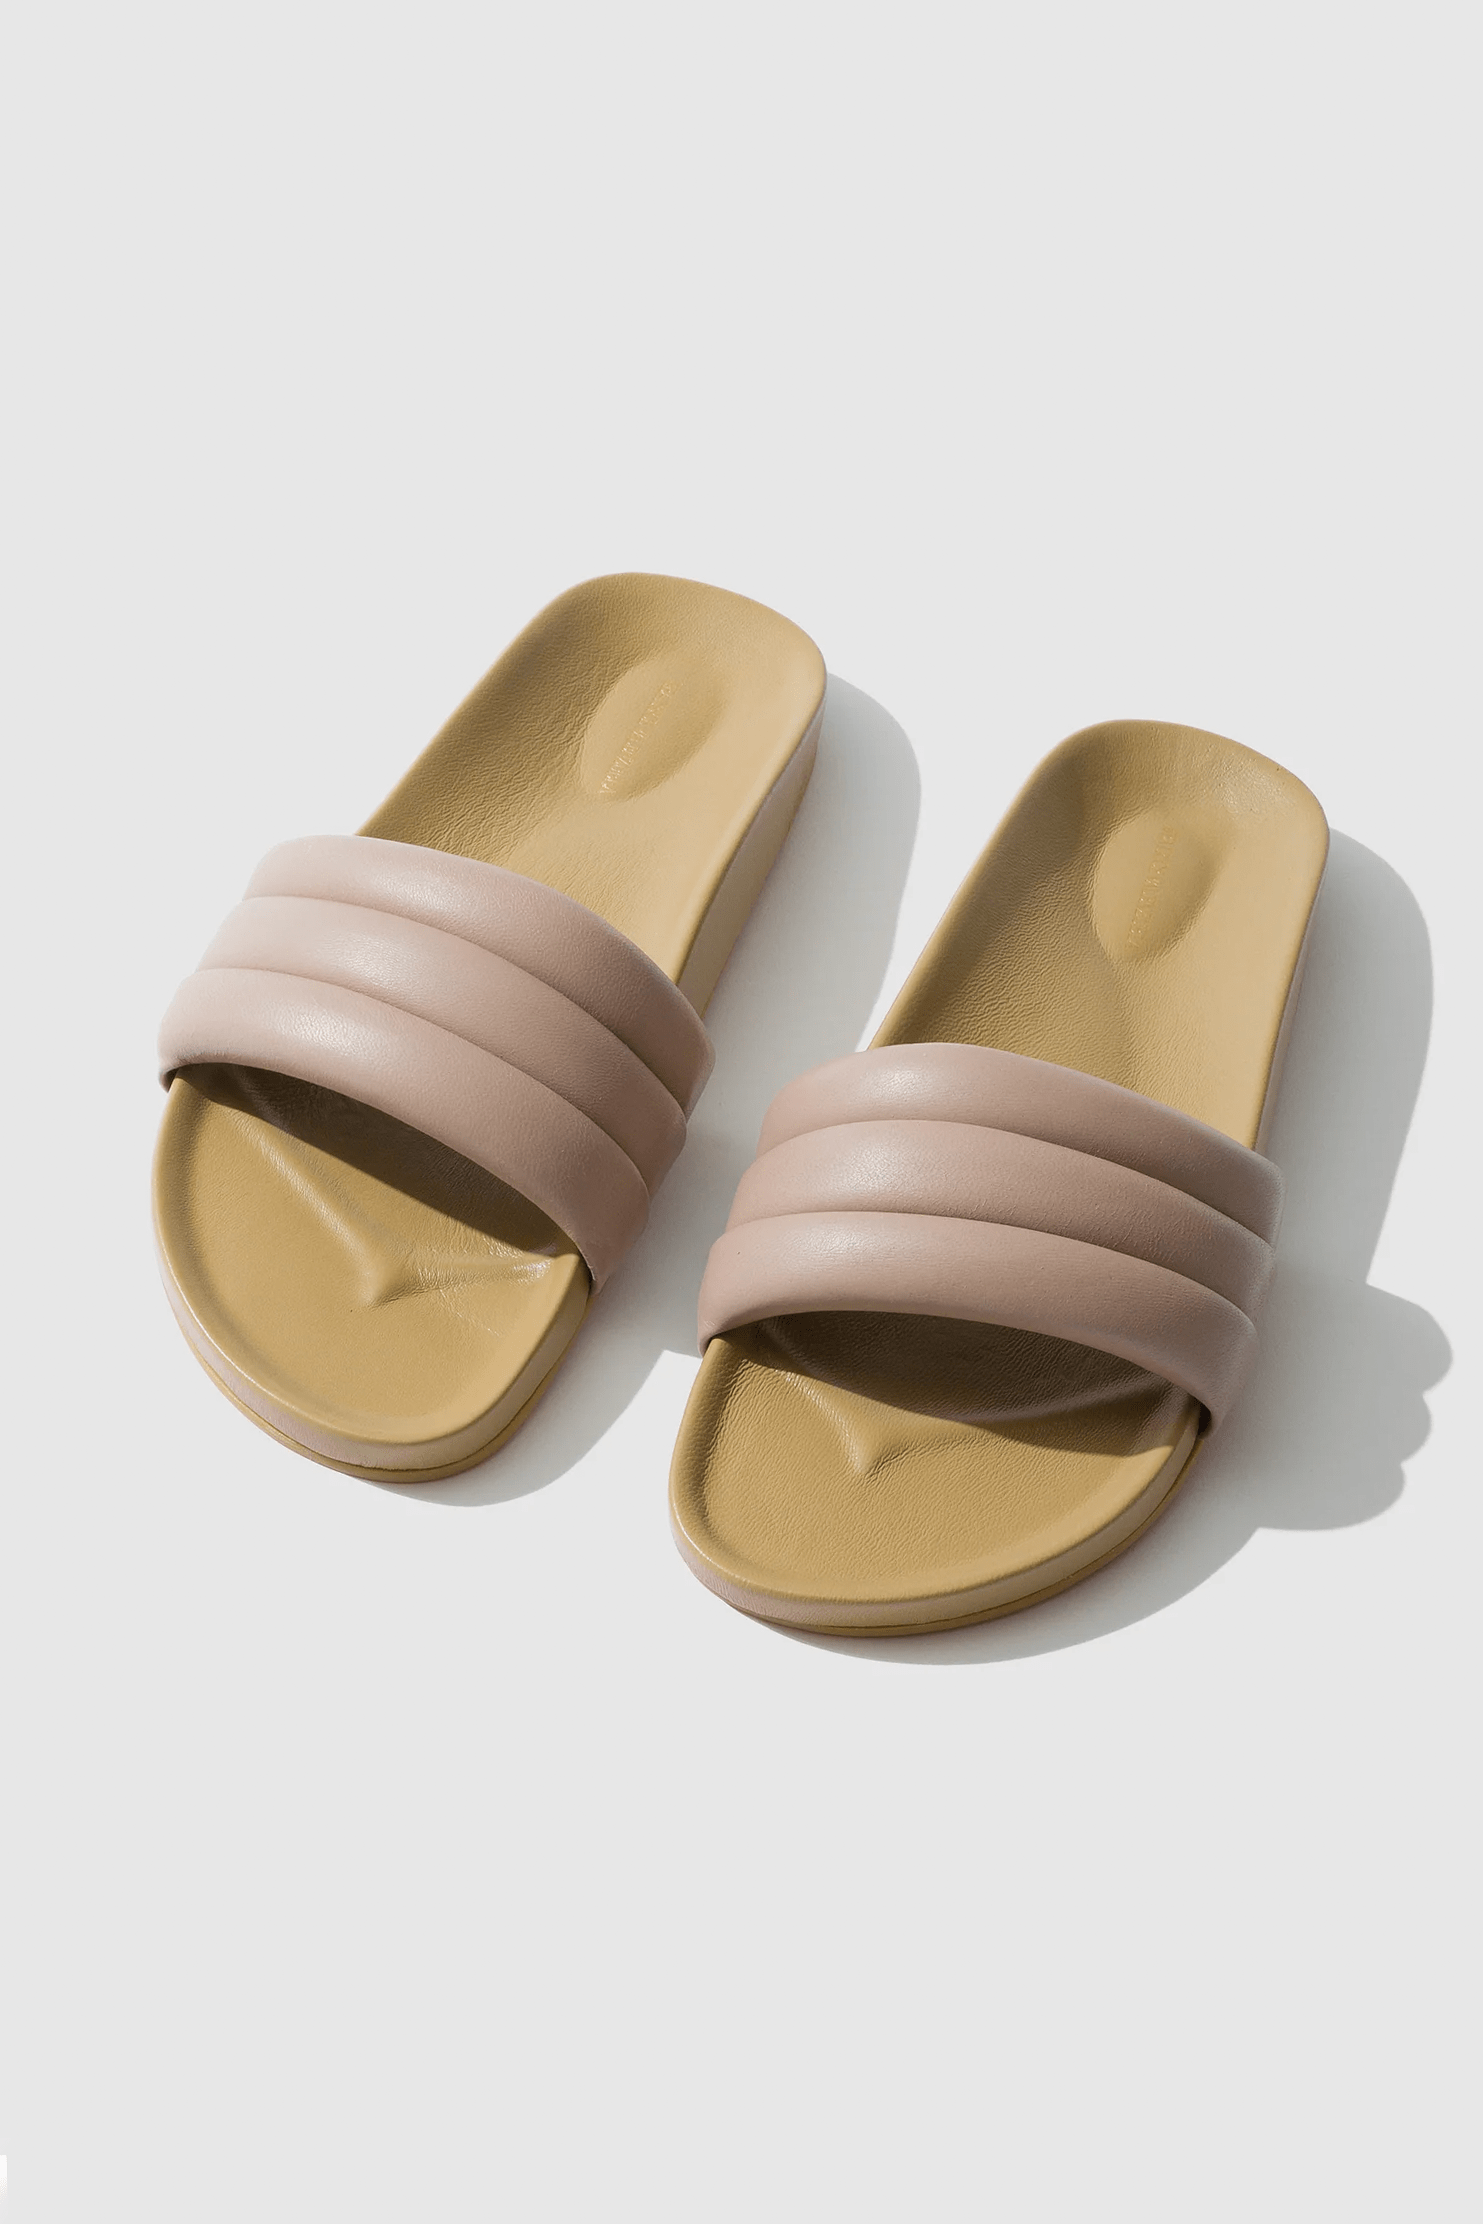 Beatrice Valenzuela classic sandalia